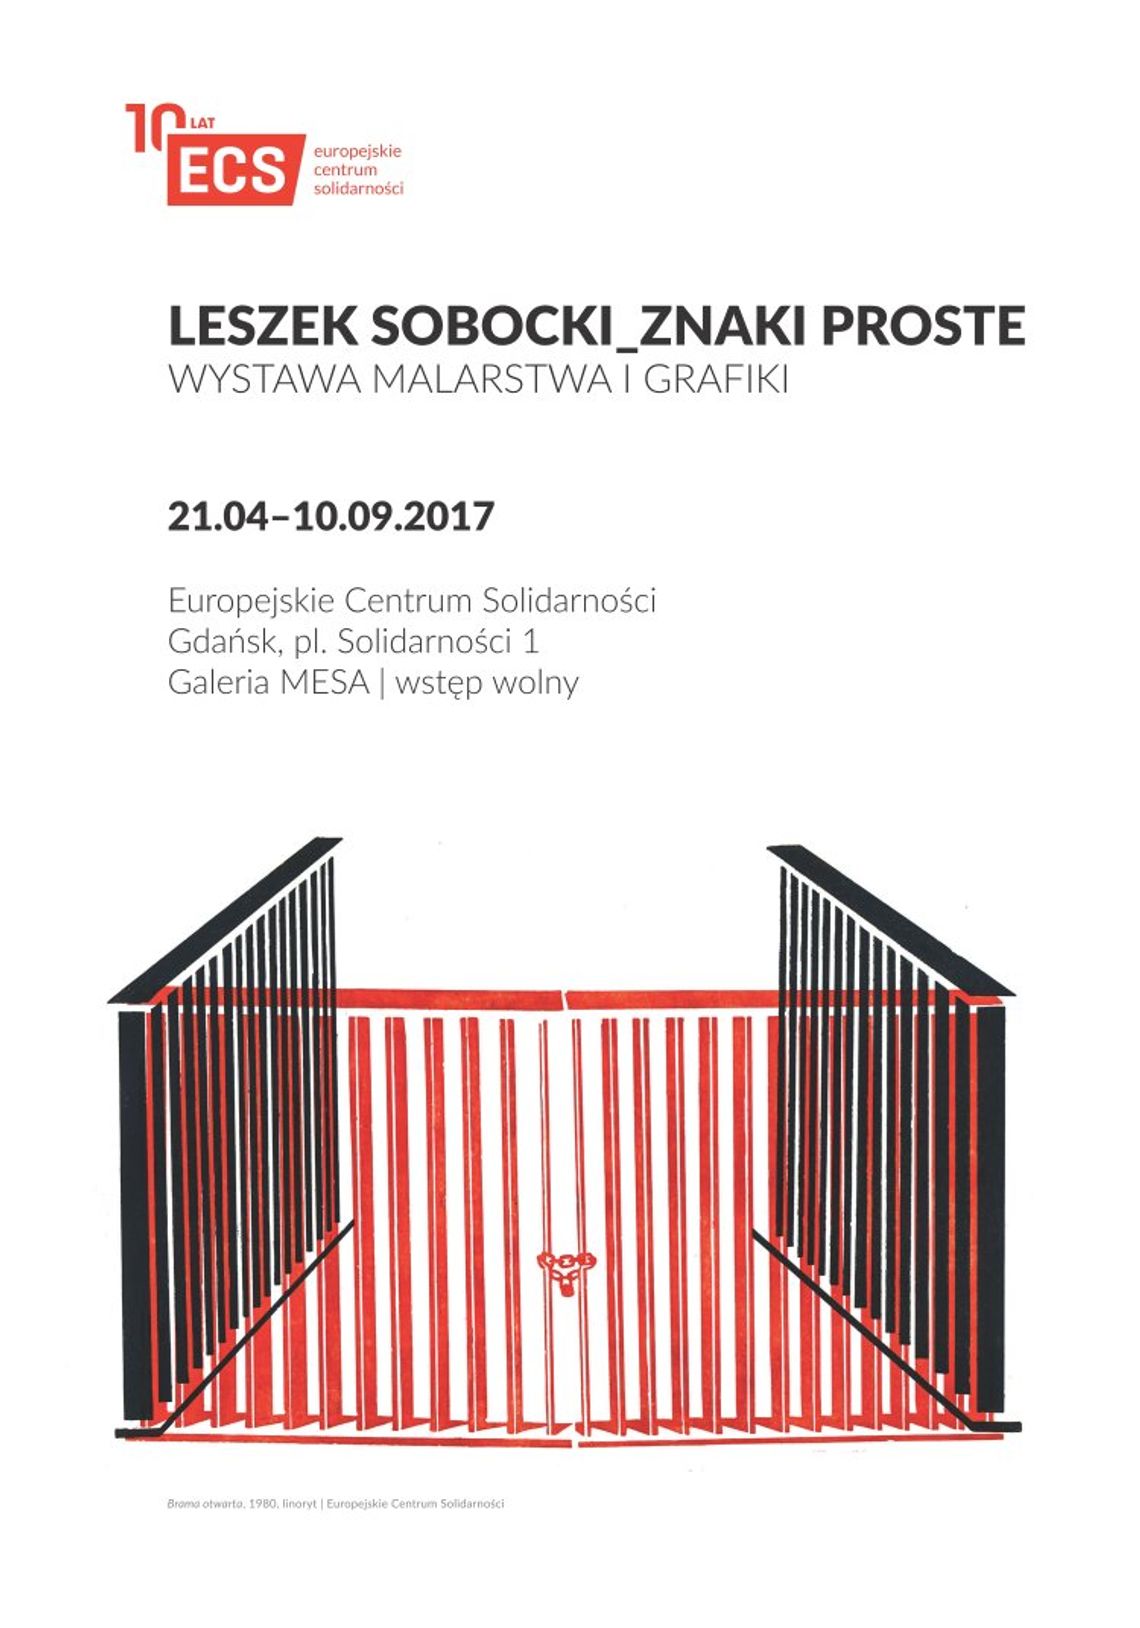 Wystawa malarstwa i grafiki Leszka Sobockiego w galerii MESA Europejskiego Centrum Solidarności. 